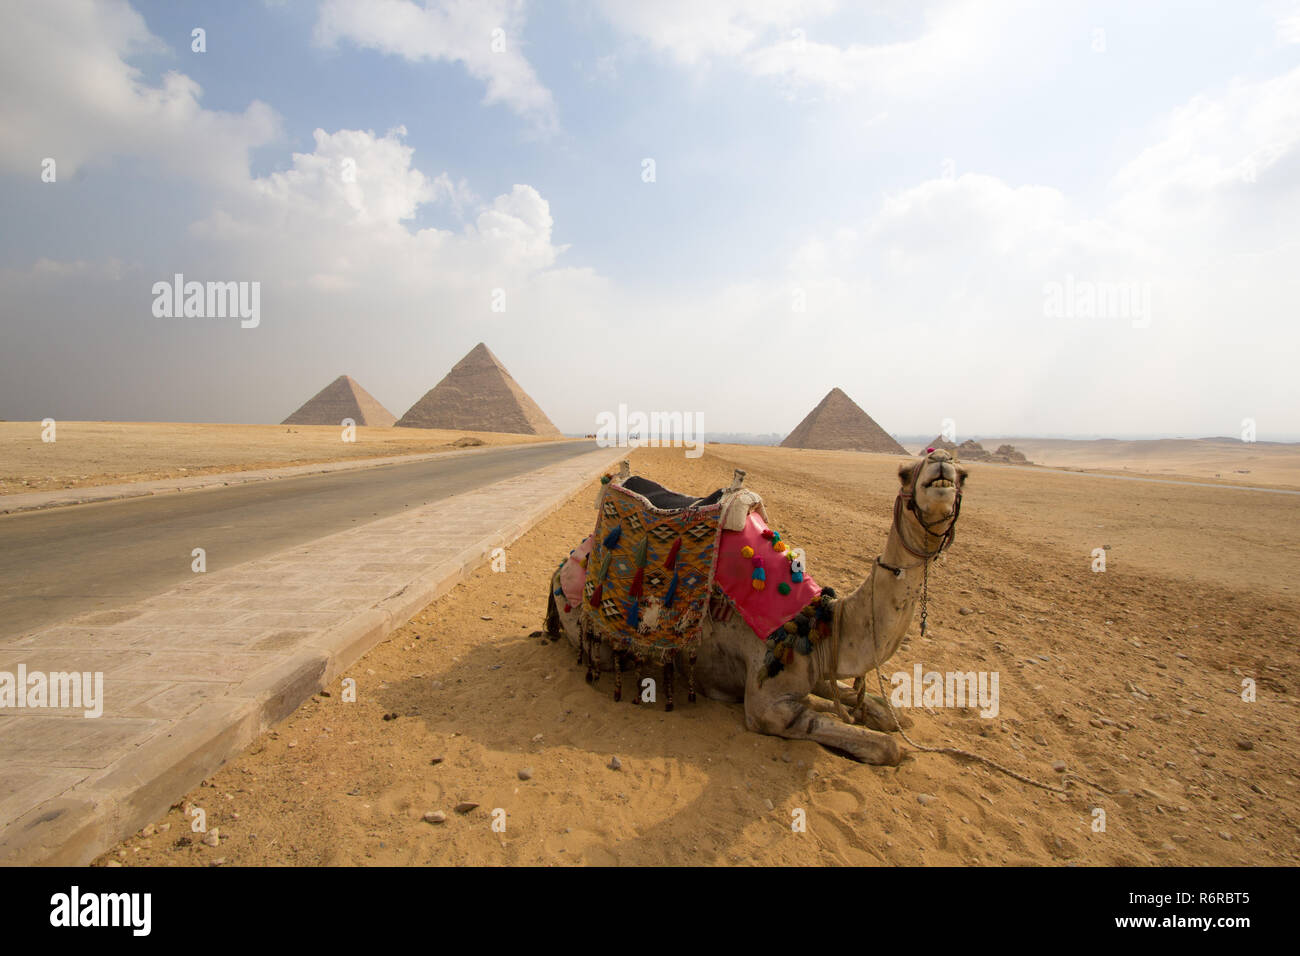 Kairo, Ägypten - 12. November 2018: Foto für Pyramide des Cheops in den Pyramiden von Gizeh in Kairo, Hauptstadt Ägyptens, und Pyramide von Khafra und sittin Stockfoto